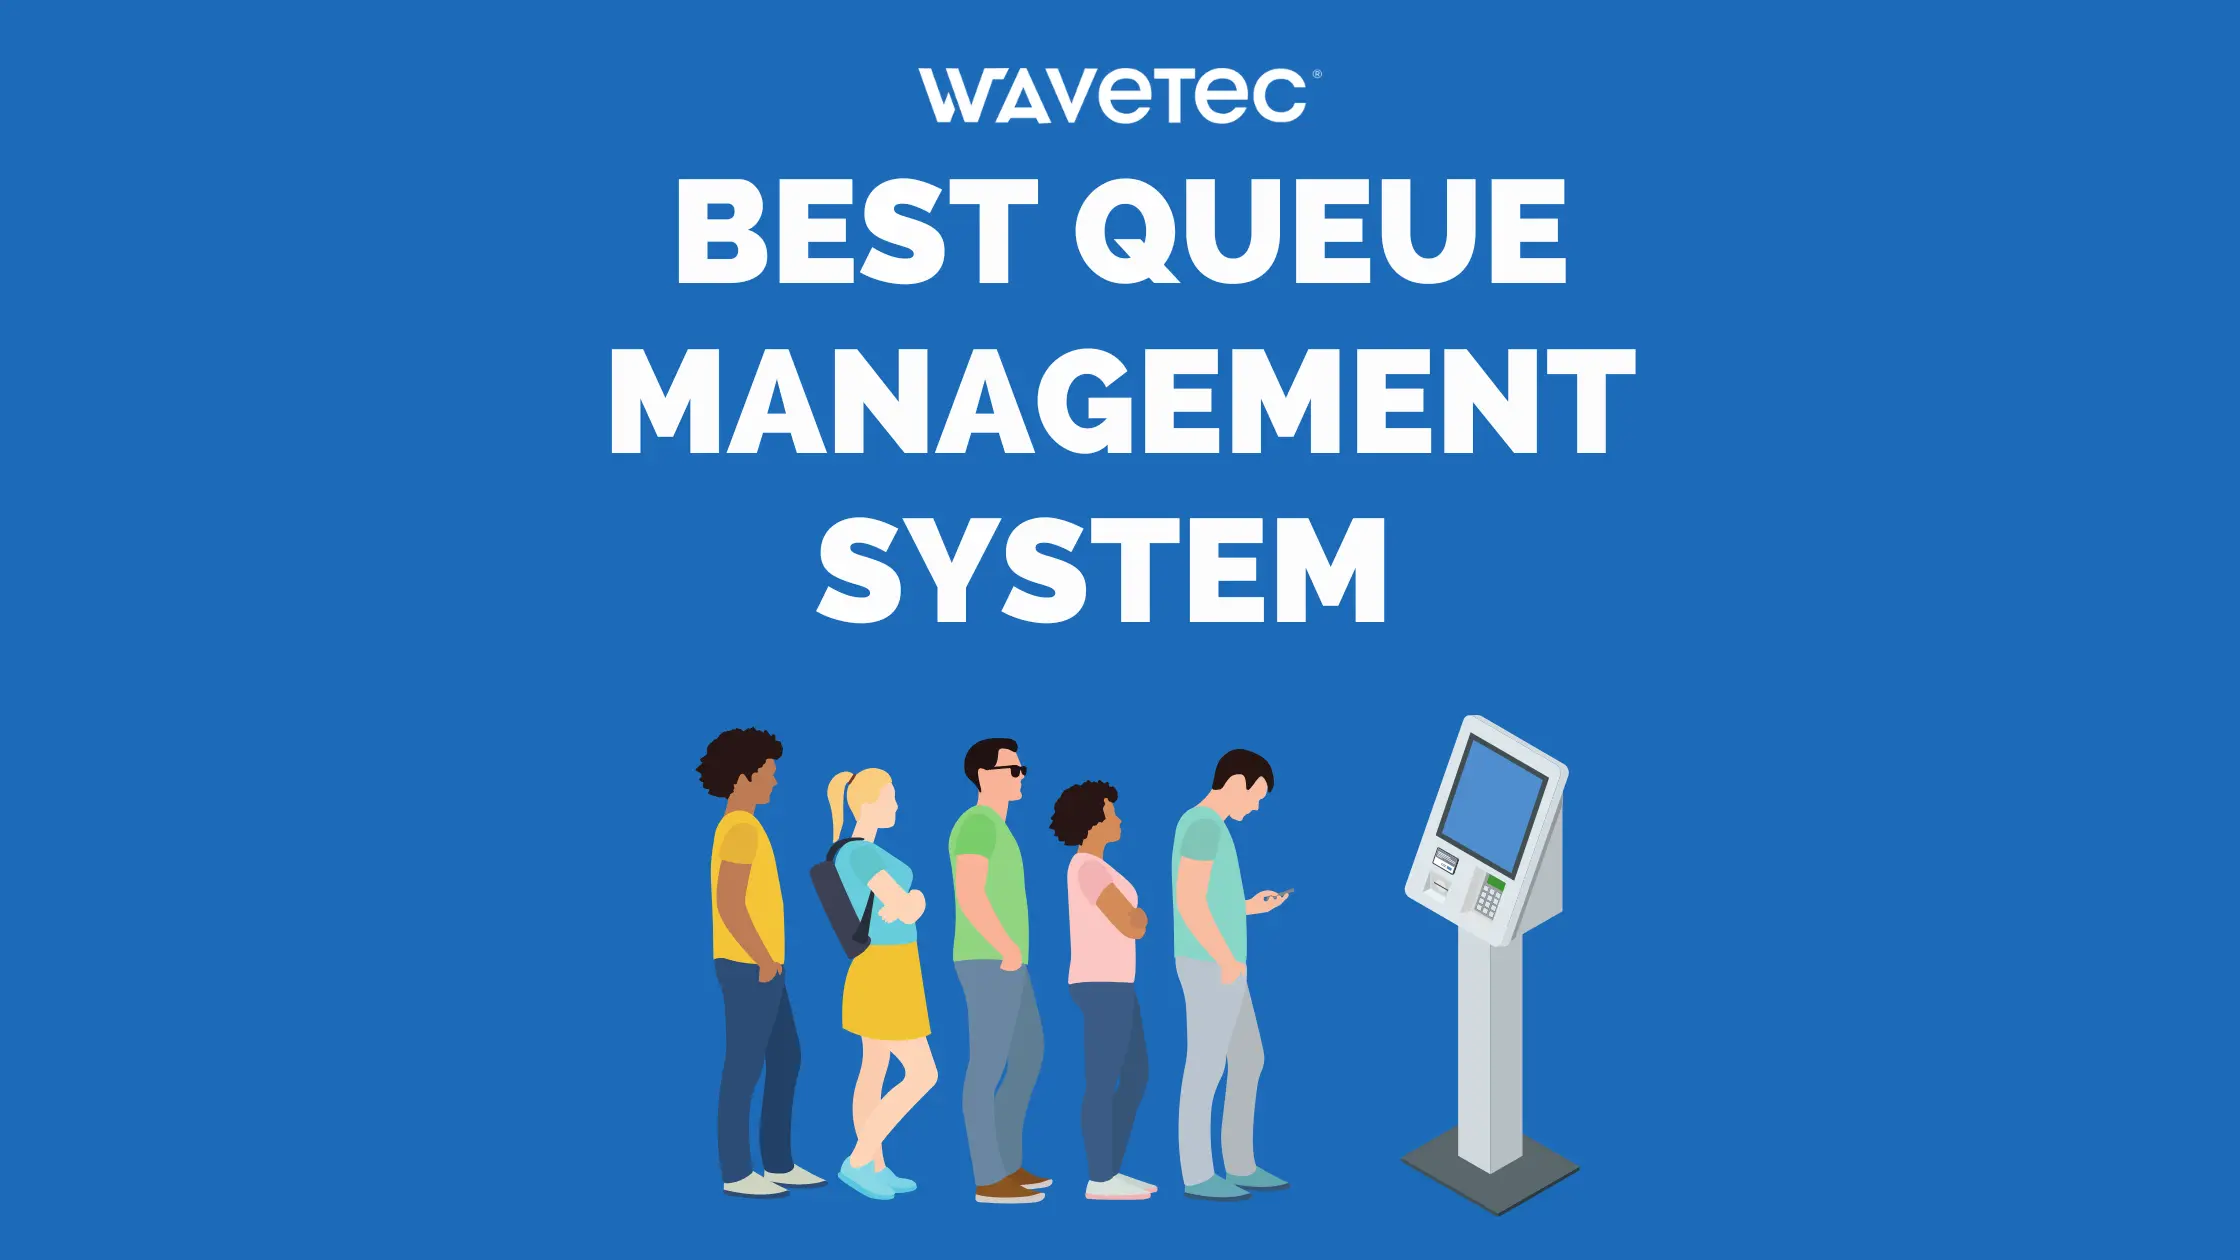 best queue management system